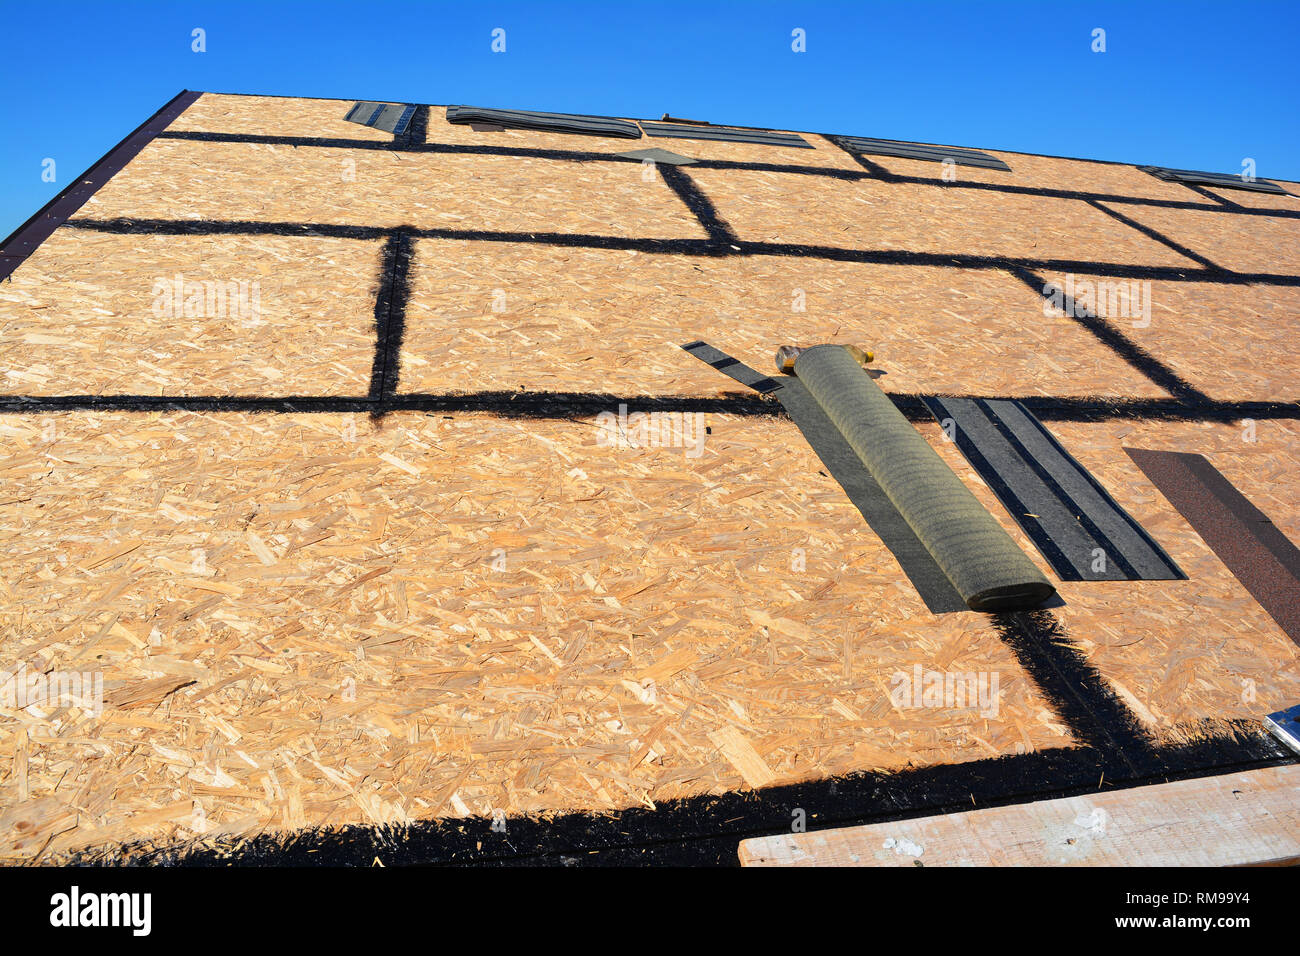 Dachschindeln - Dachkonstruktion, haus dach Reparatur mit asphaltschindeln Stockfoto